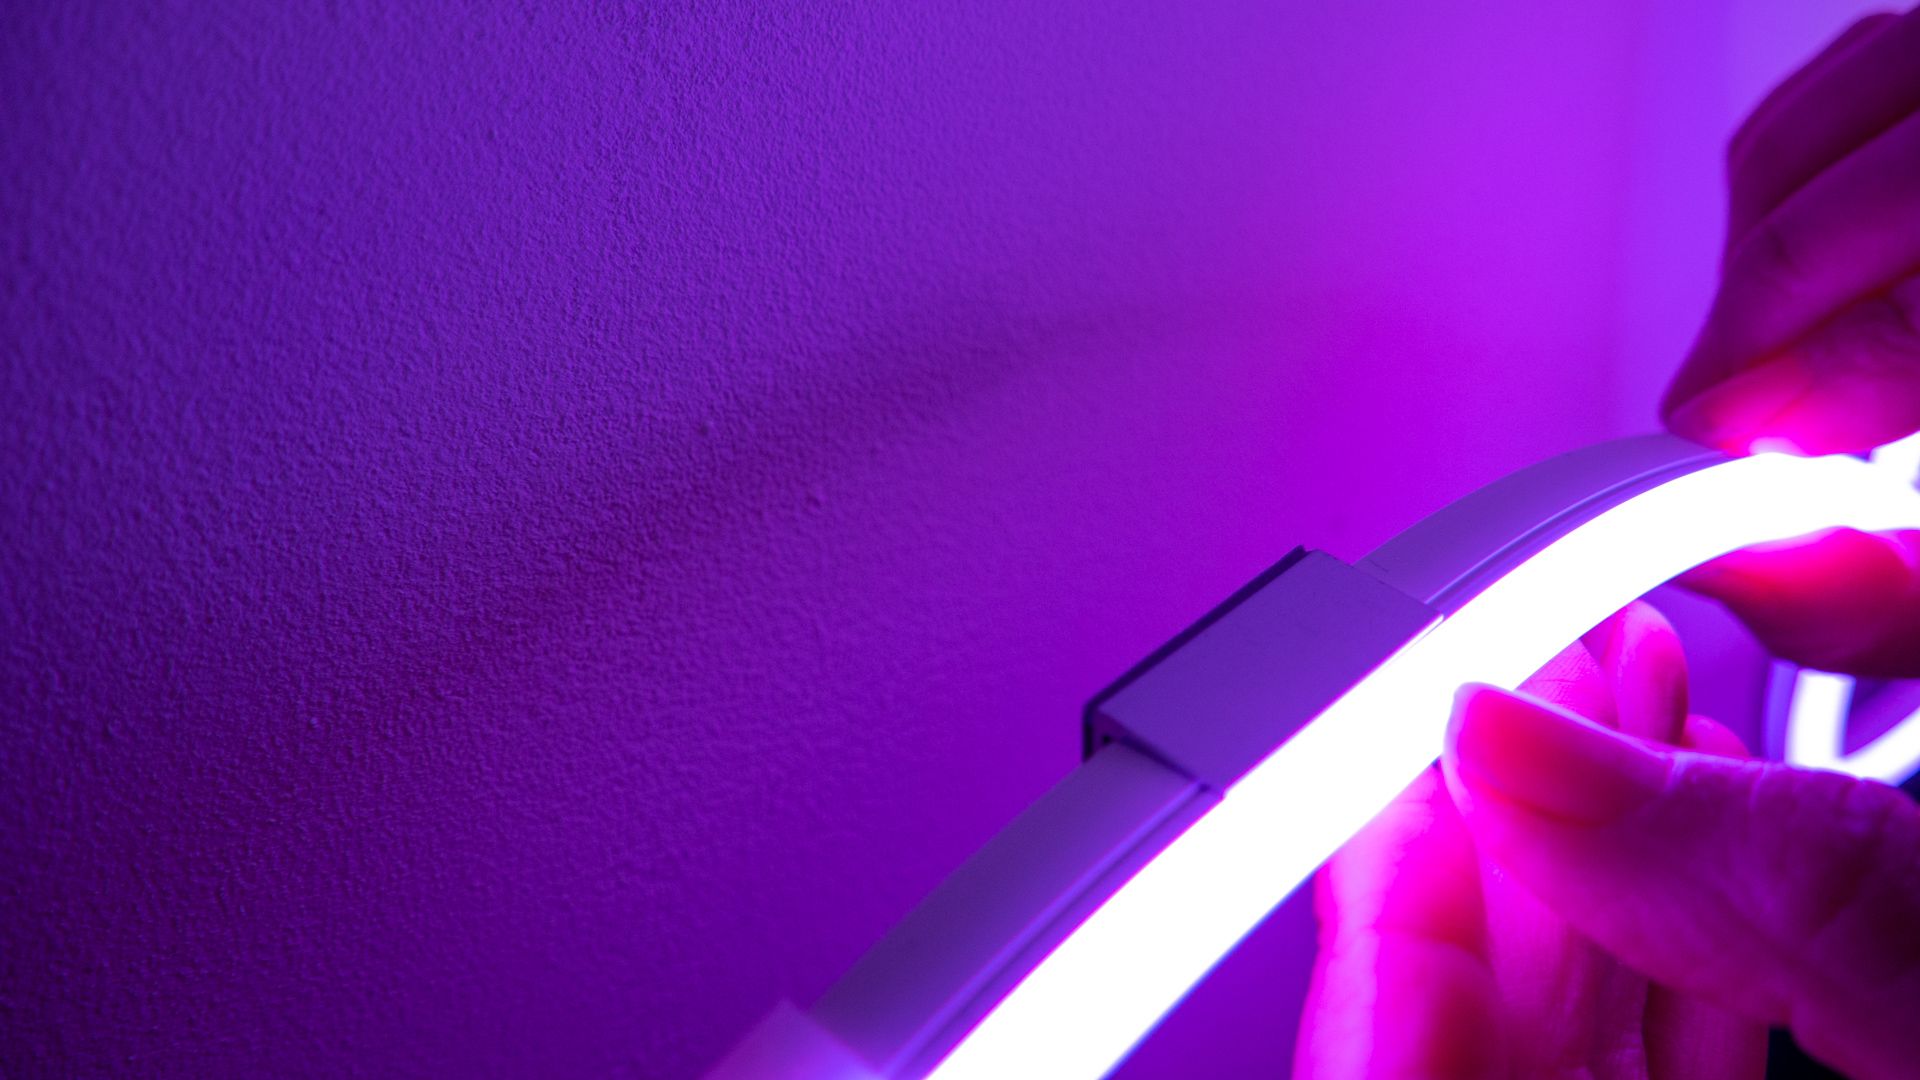 govee neon rope light - installation sticky pad